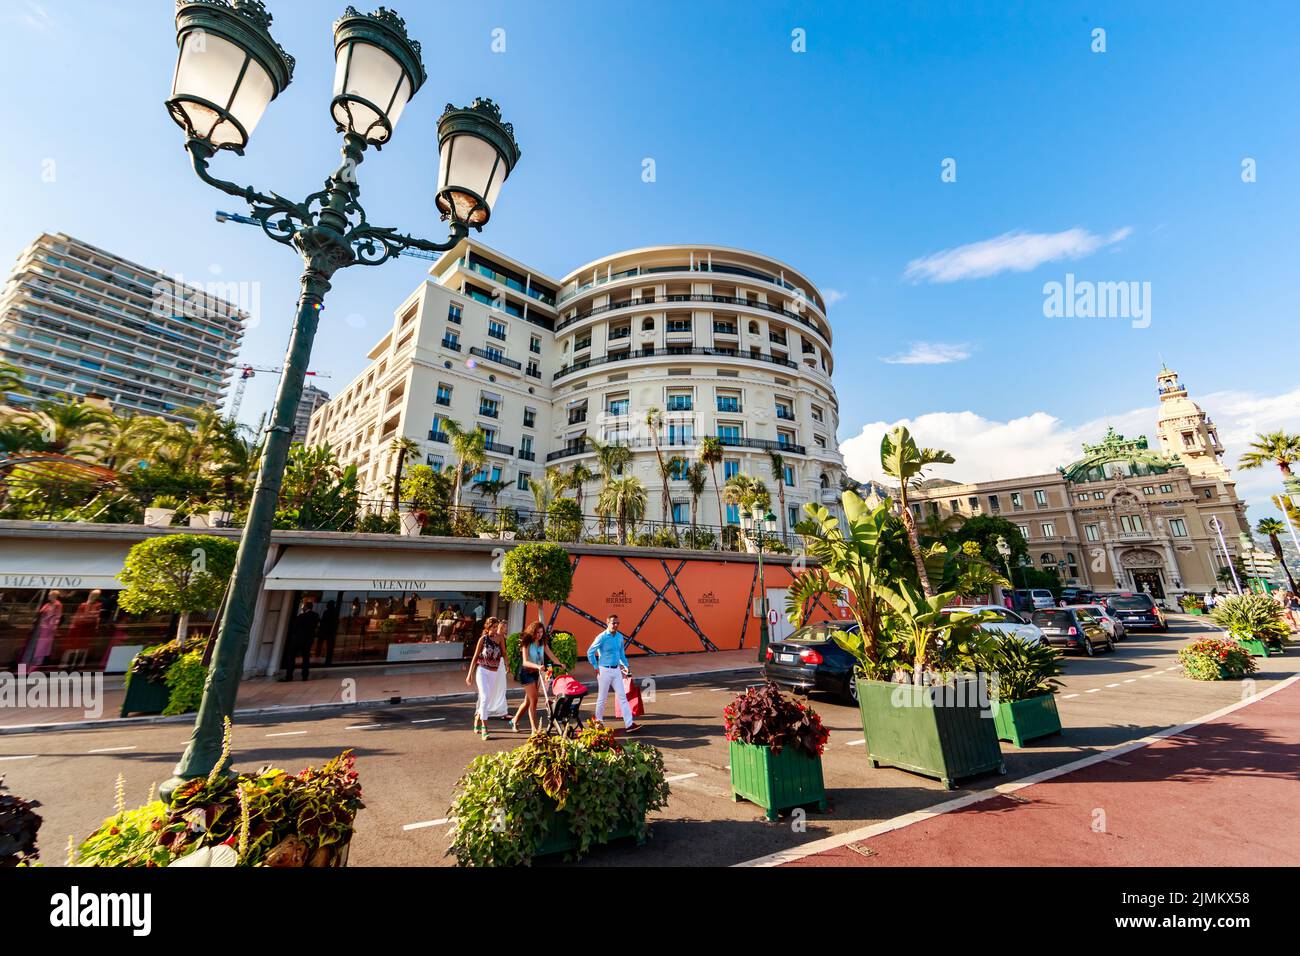 Monaco, Monte-Carlo, 21 août 2017 : les touristes et les riches visitent des boutiques de marque près de l'hôtel Paris et du Casino Monte-Carlo Banque D'Images